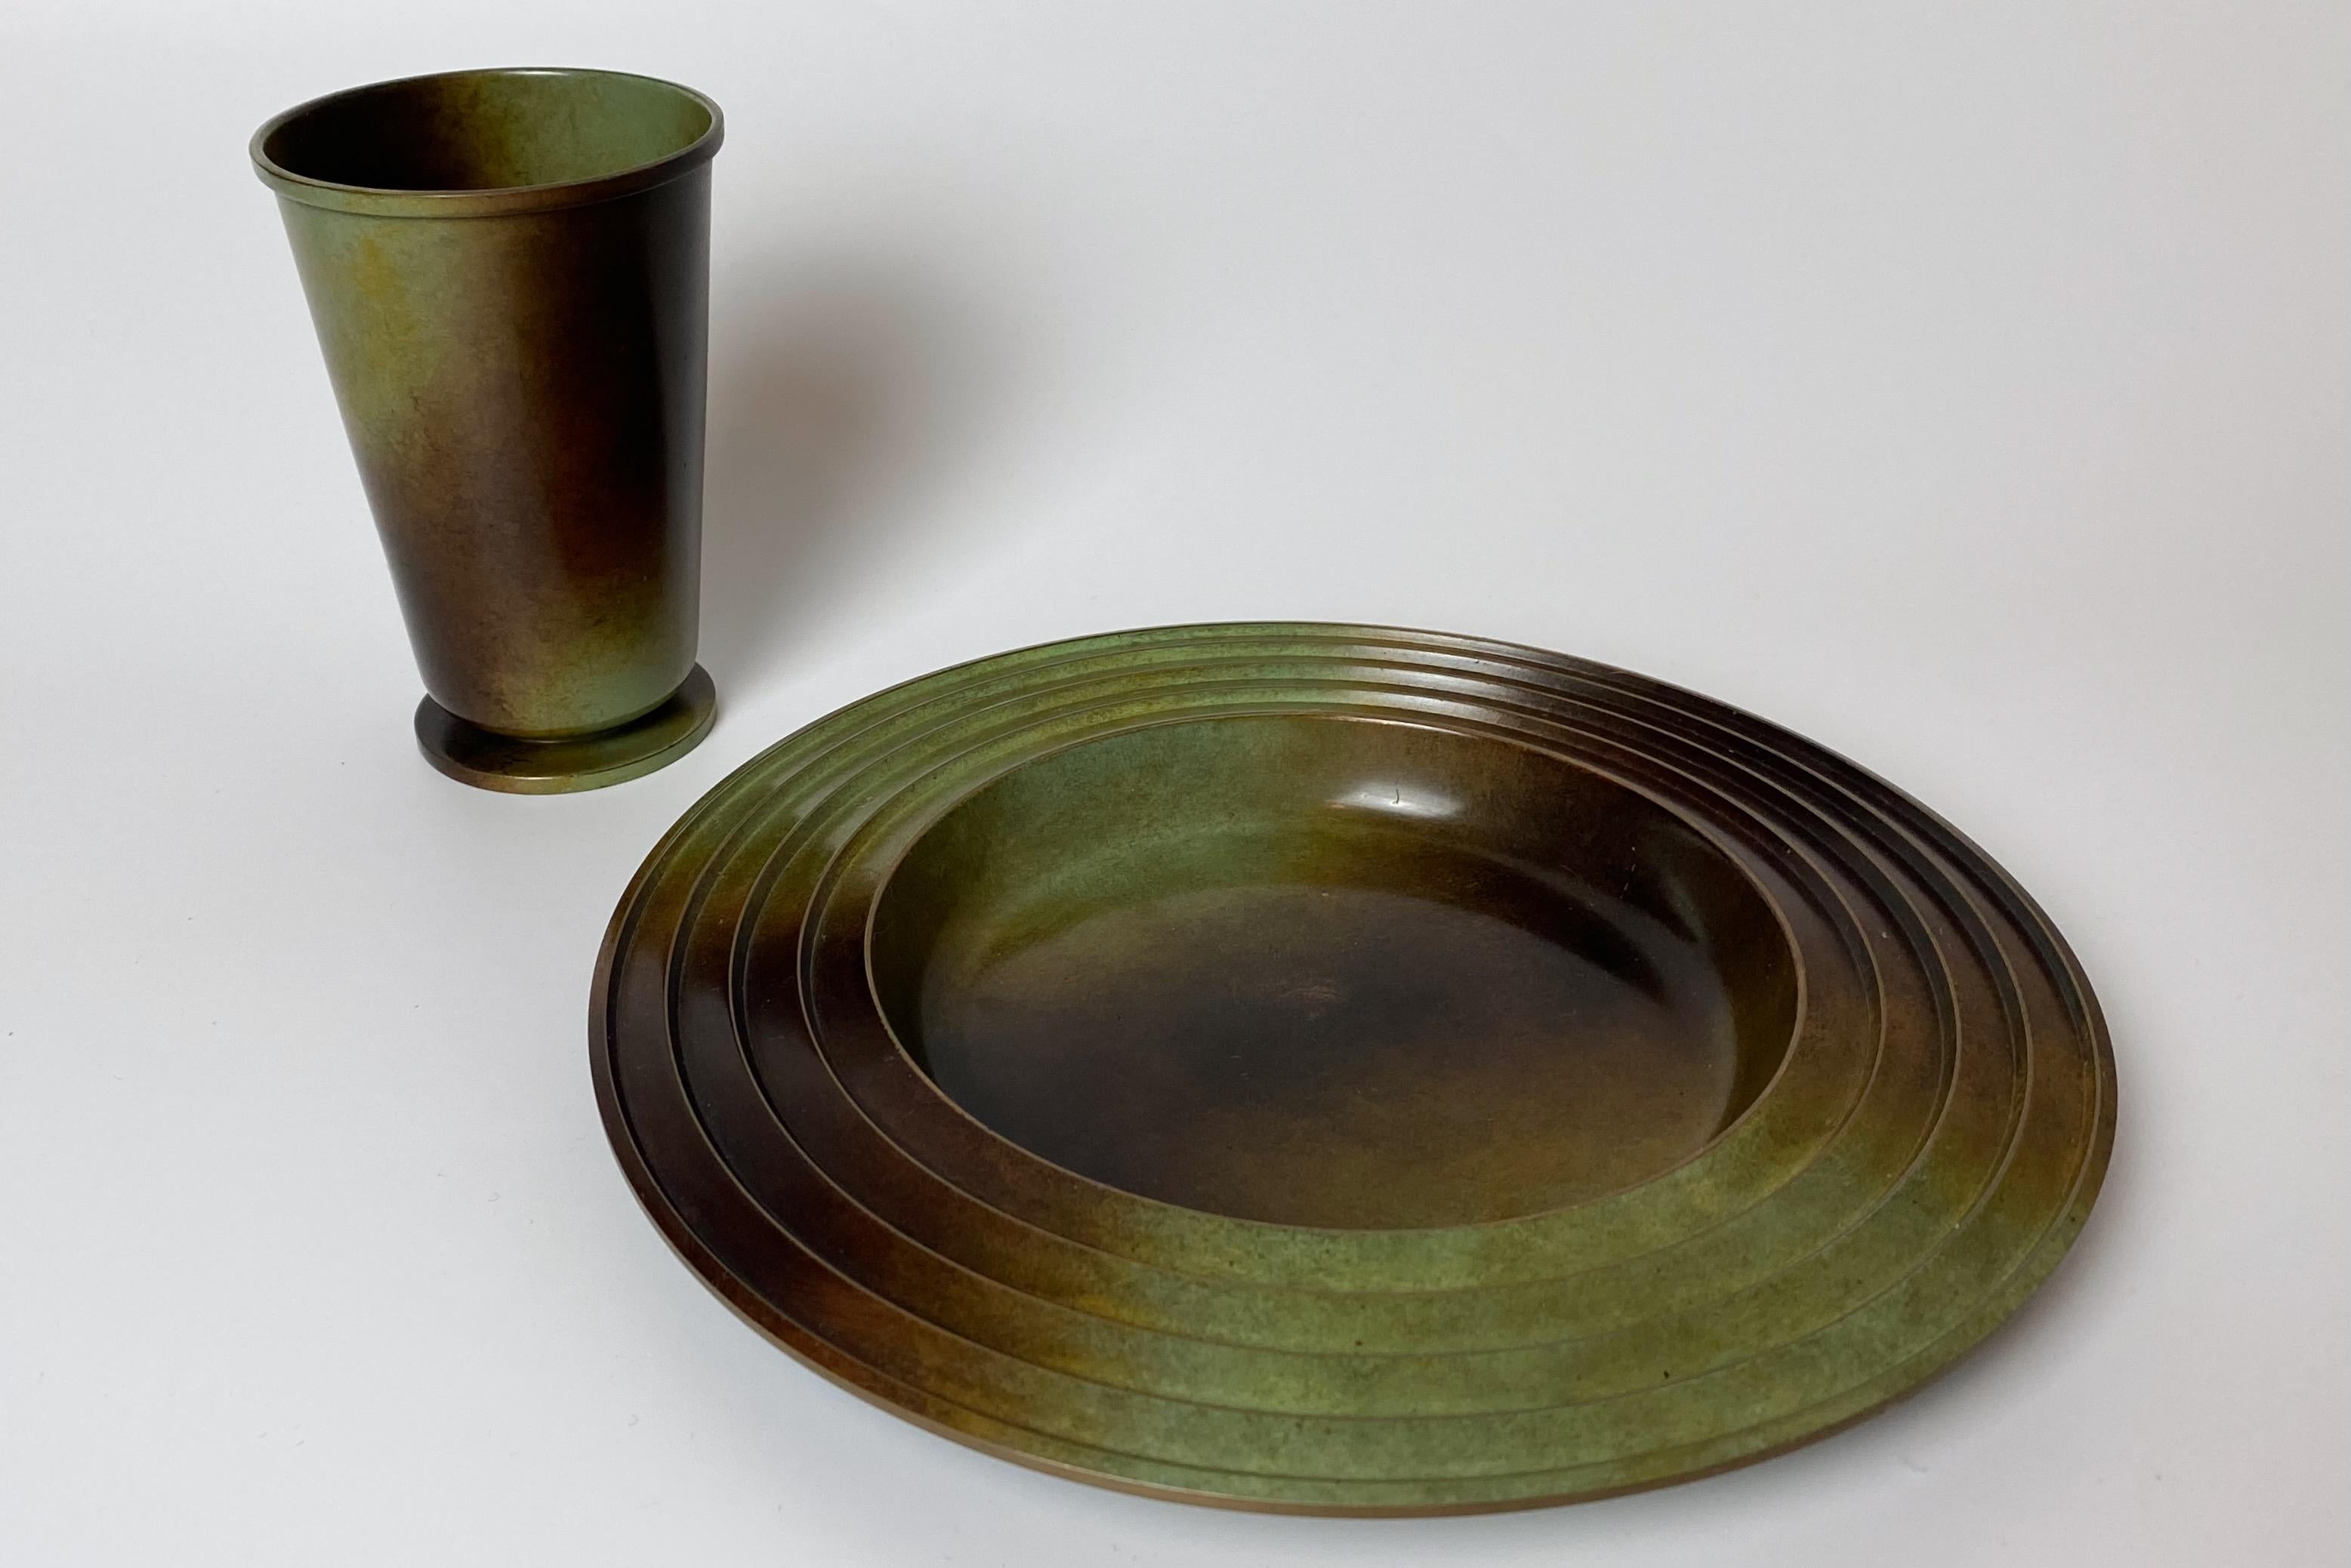 Magnifique ensemble composé d'une assiette et d'un vase en bronze patiné par Ystad Brons, Suède, datant des années 1930. La plaque a été conçue par Ivar Ålenius-Björk. Très bon état avec de petites marques d'usure.

Pays : Suède

Fabricant :